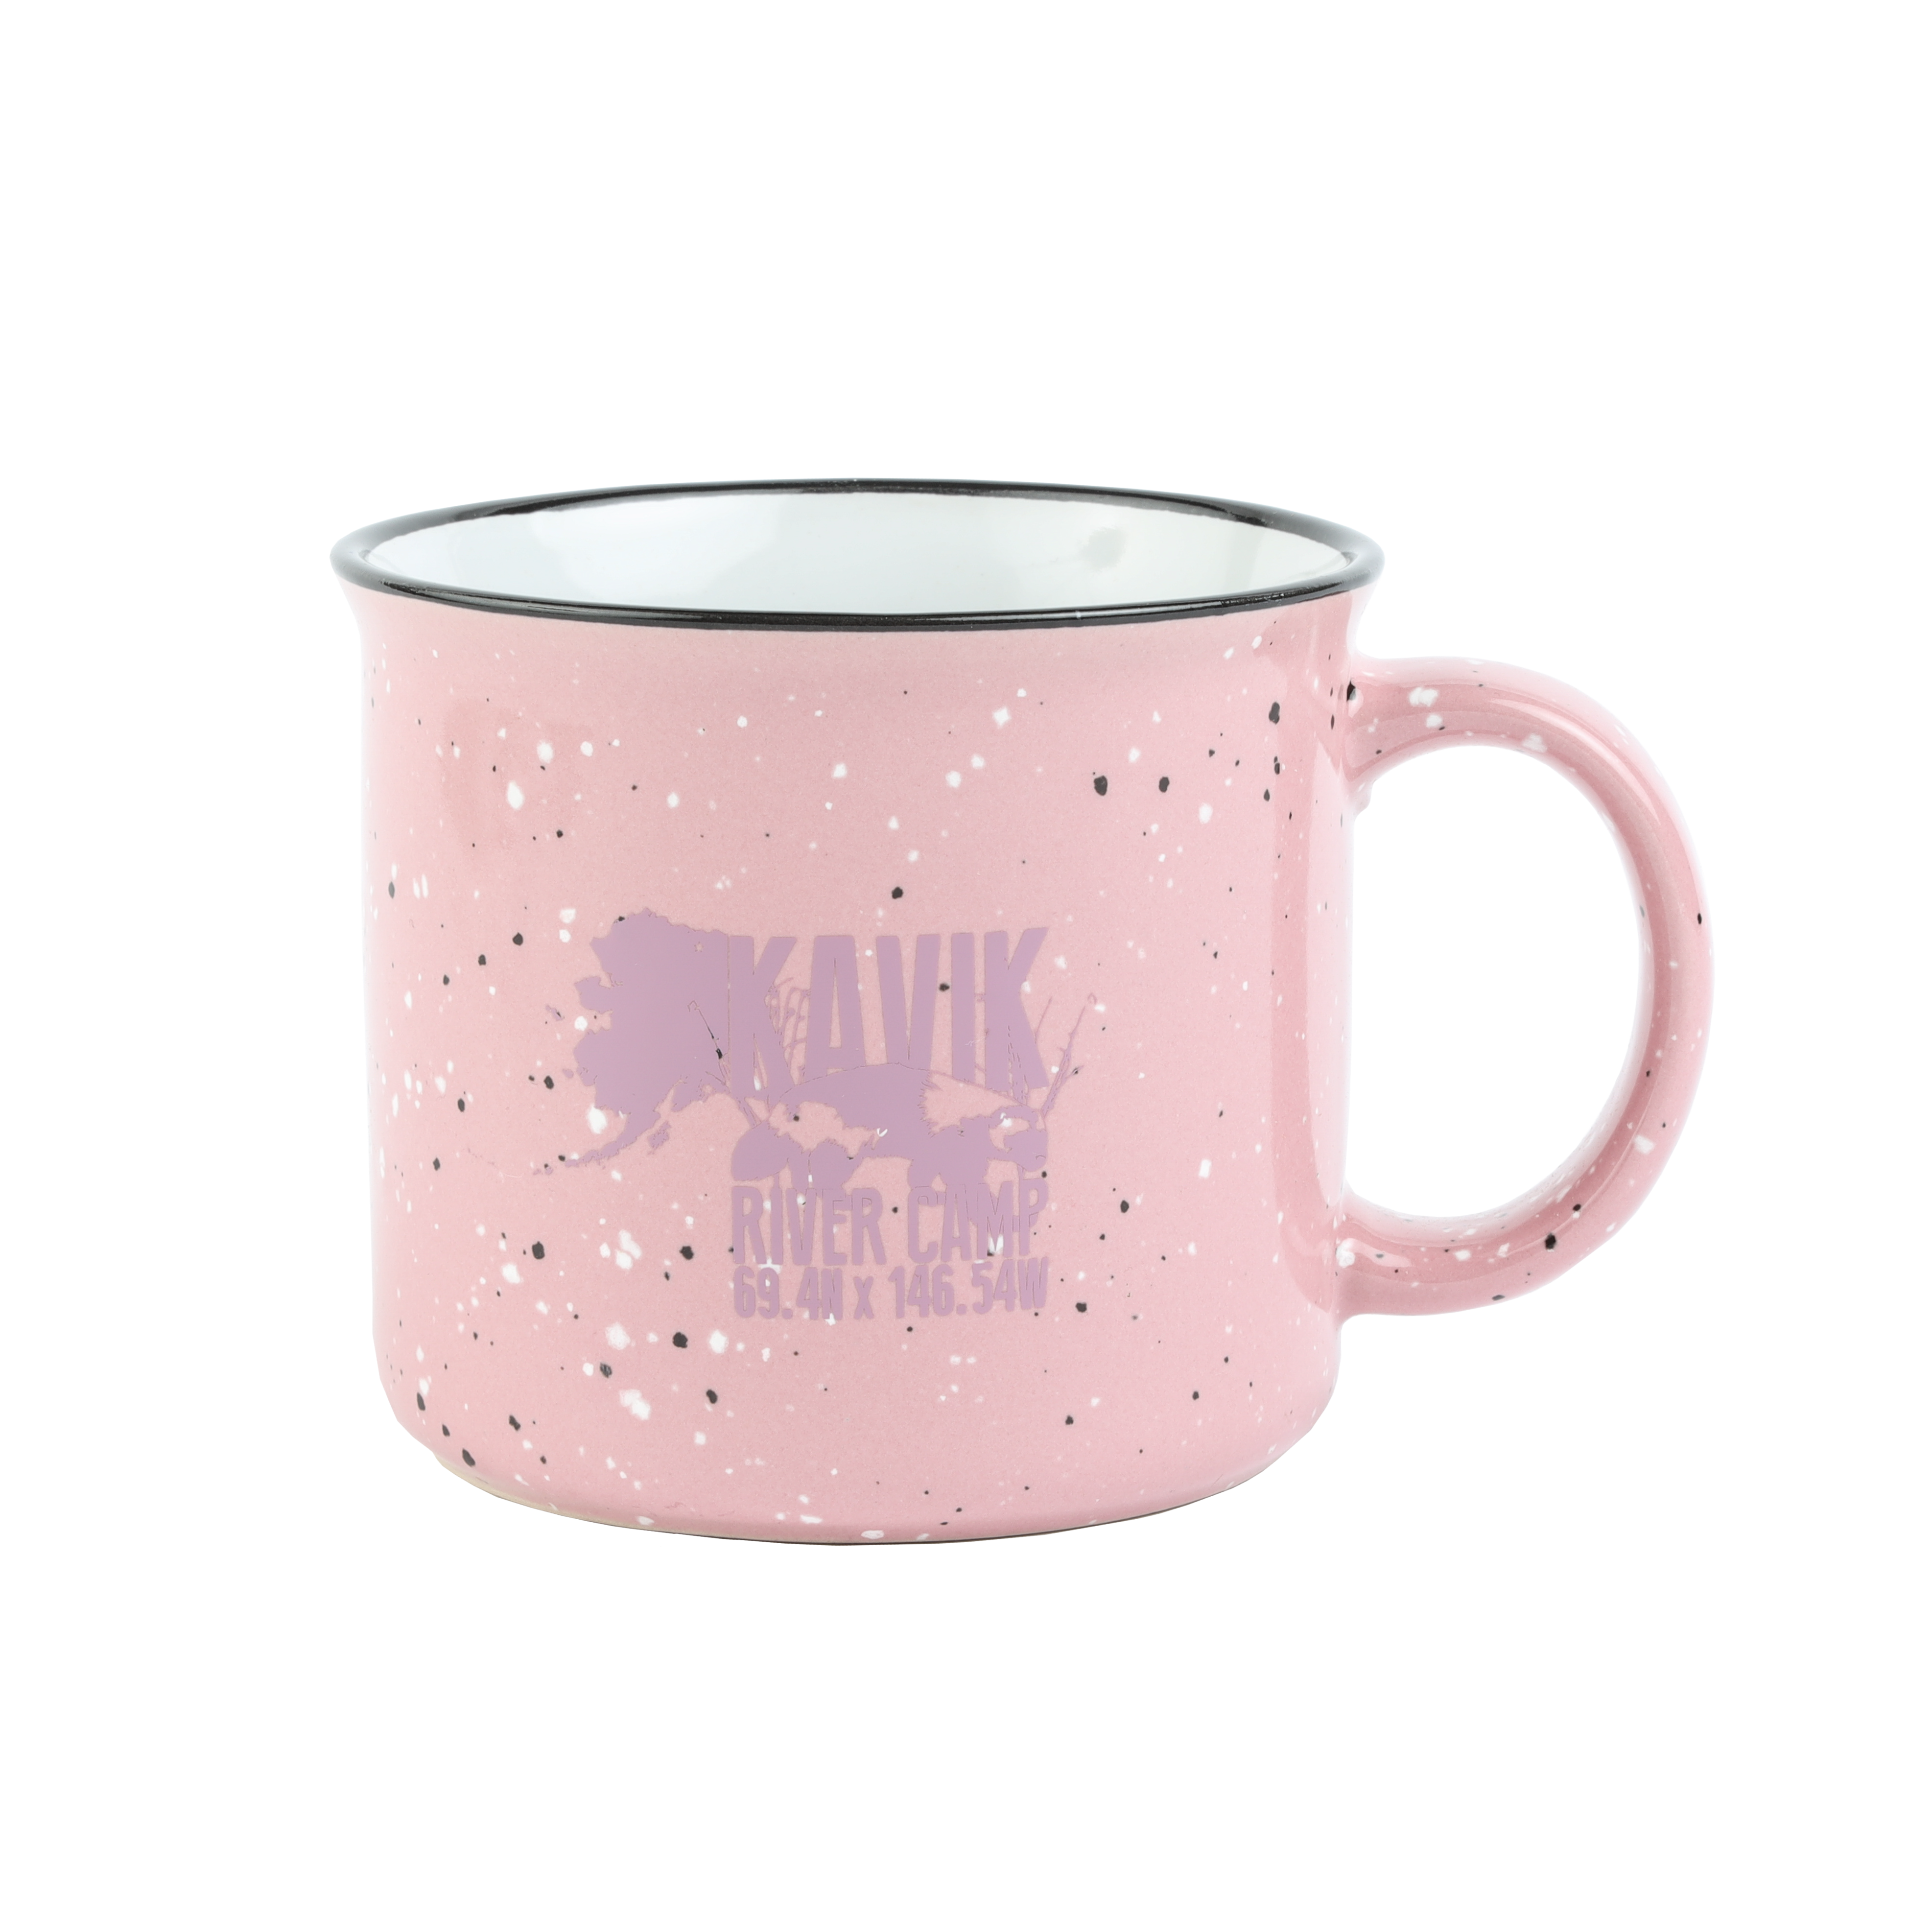 Kavik River Camp | Logo Coffee Mug - Pink